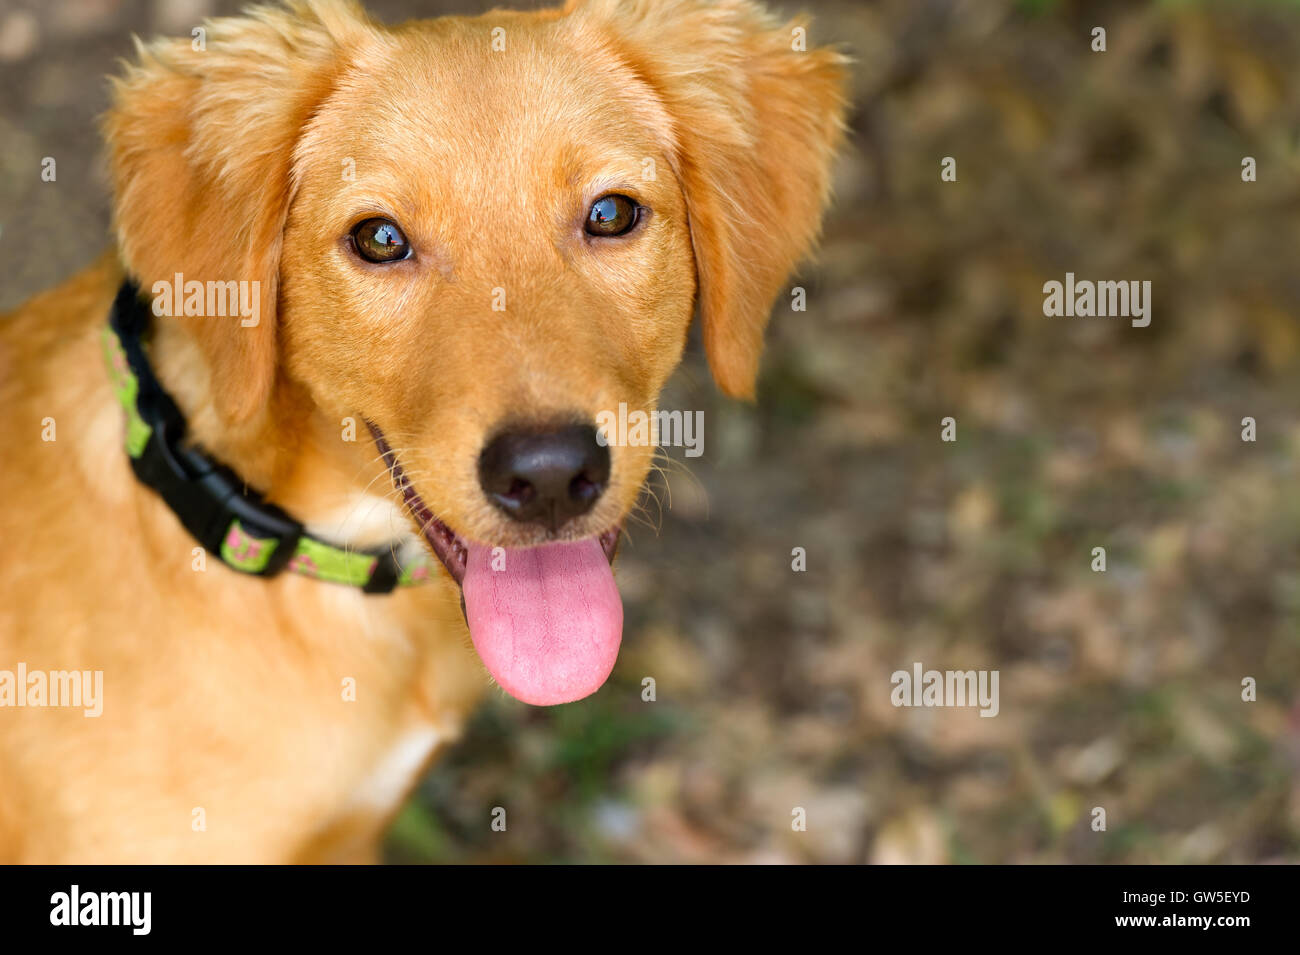 Cane felice è un ingrandimento di un simpatico adorabile cucciolo di cane con la sua lingua appendere fuori della sua bocca e una felice espressione sul suo viso. Foto Stock